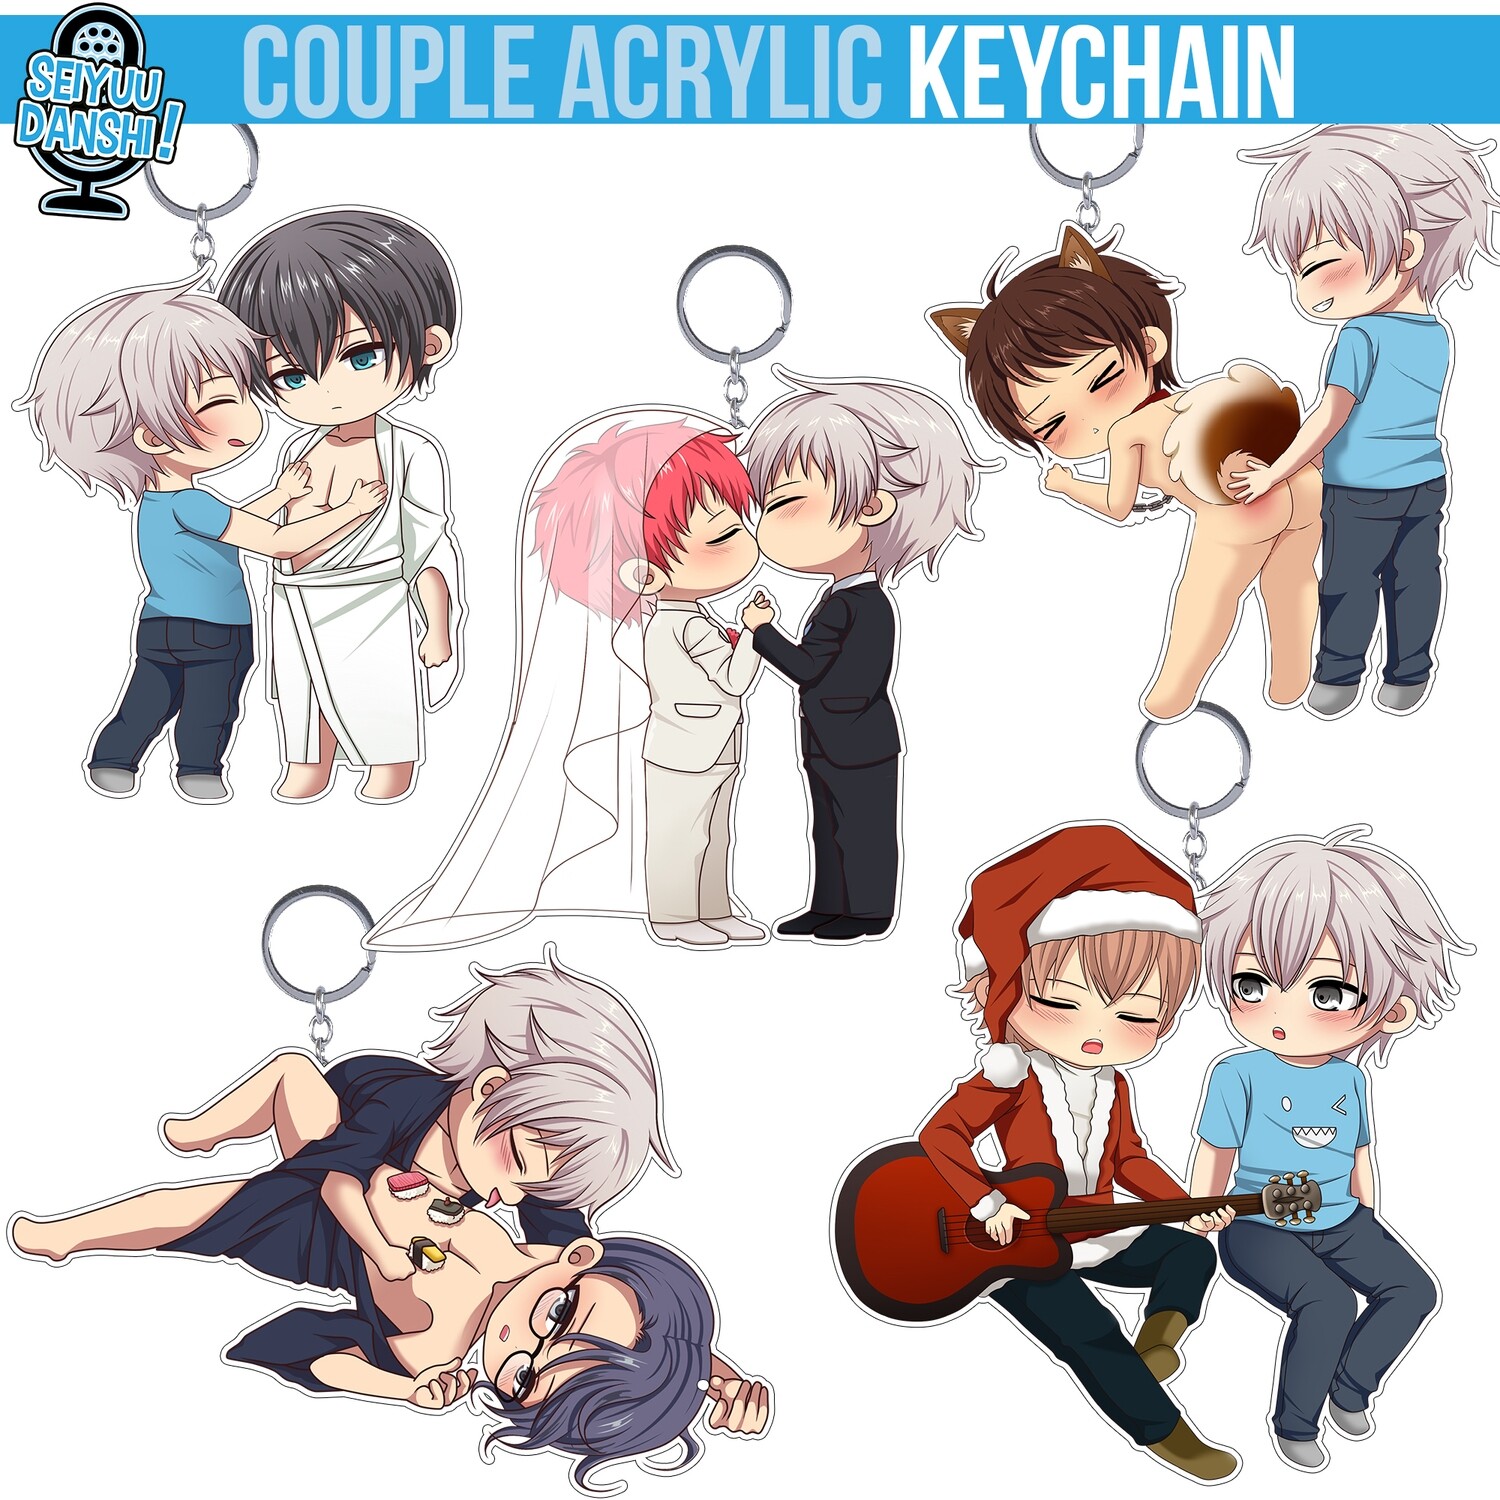 Couple acrylic keychain